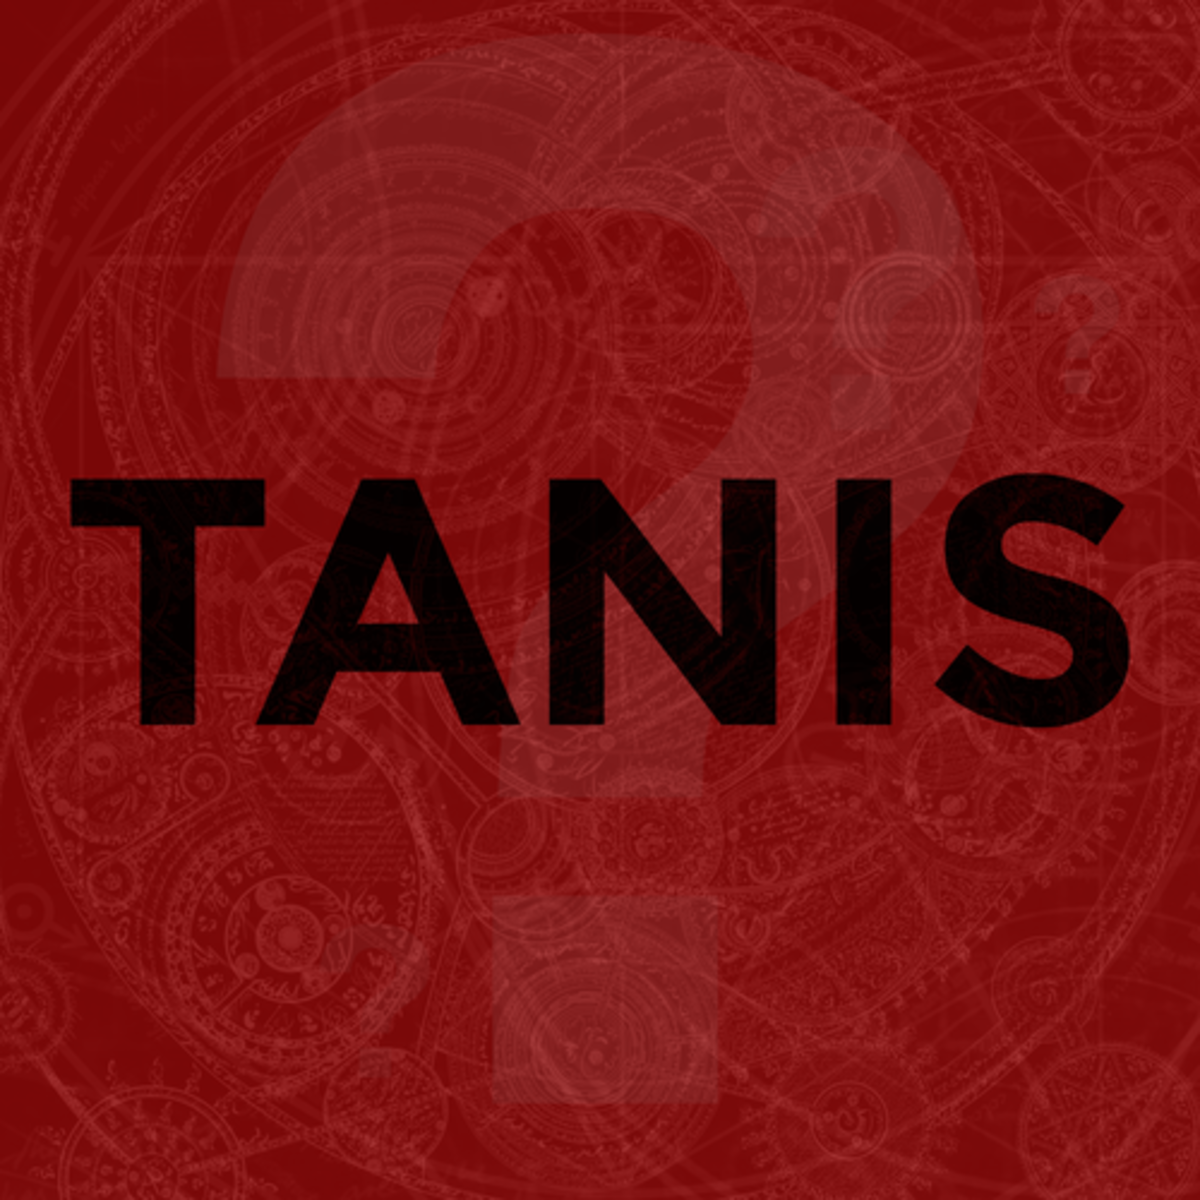 "Tanis"